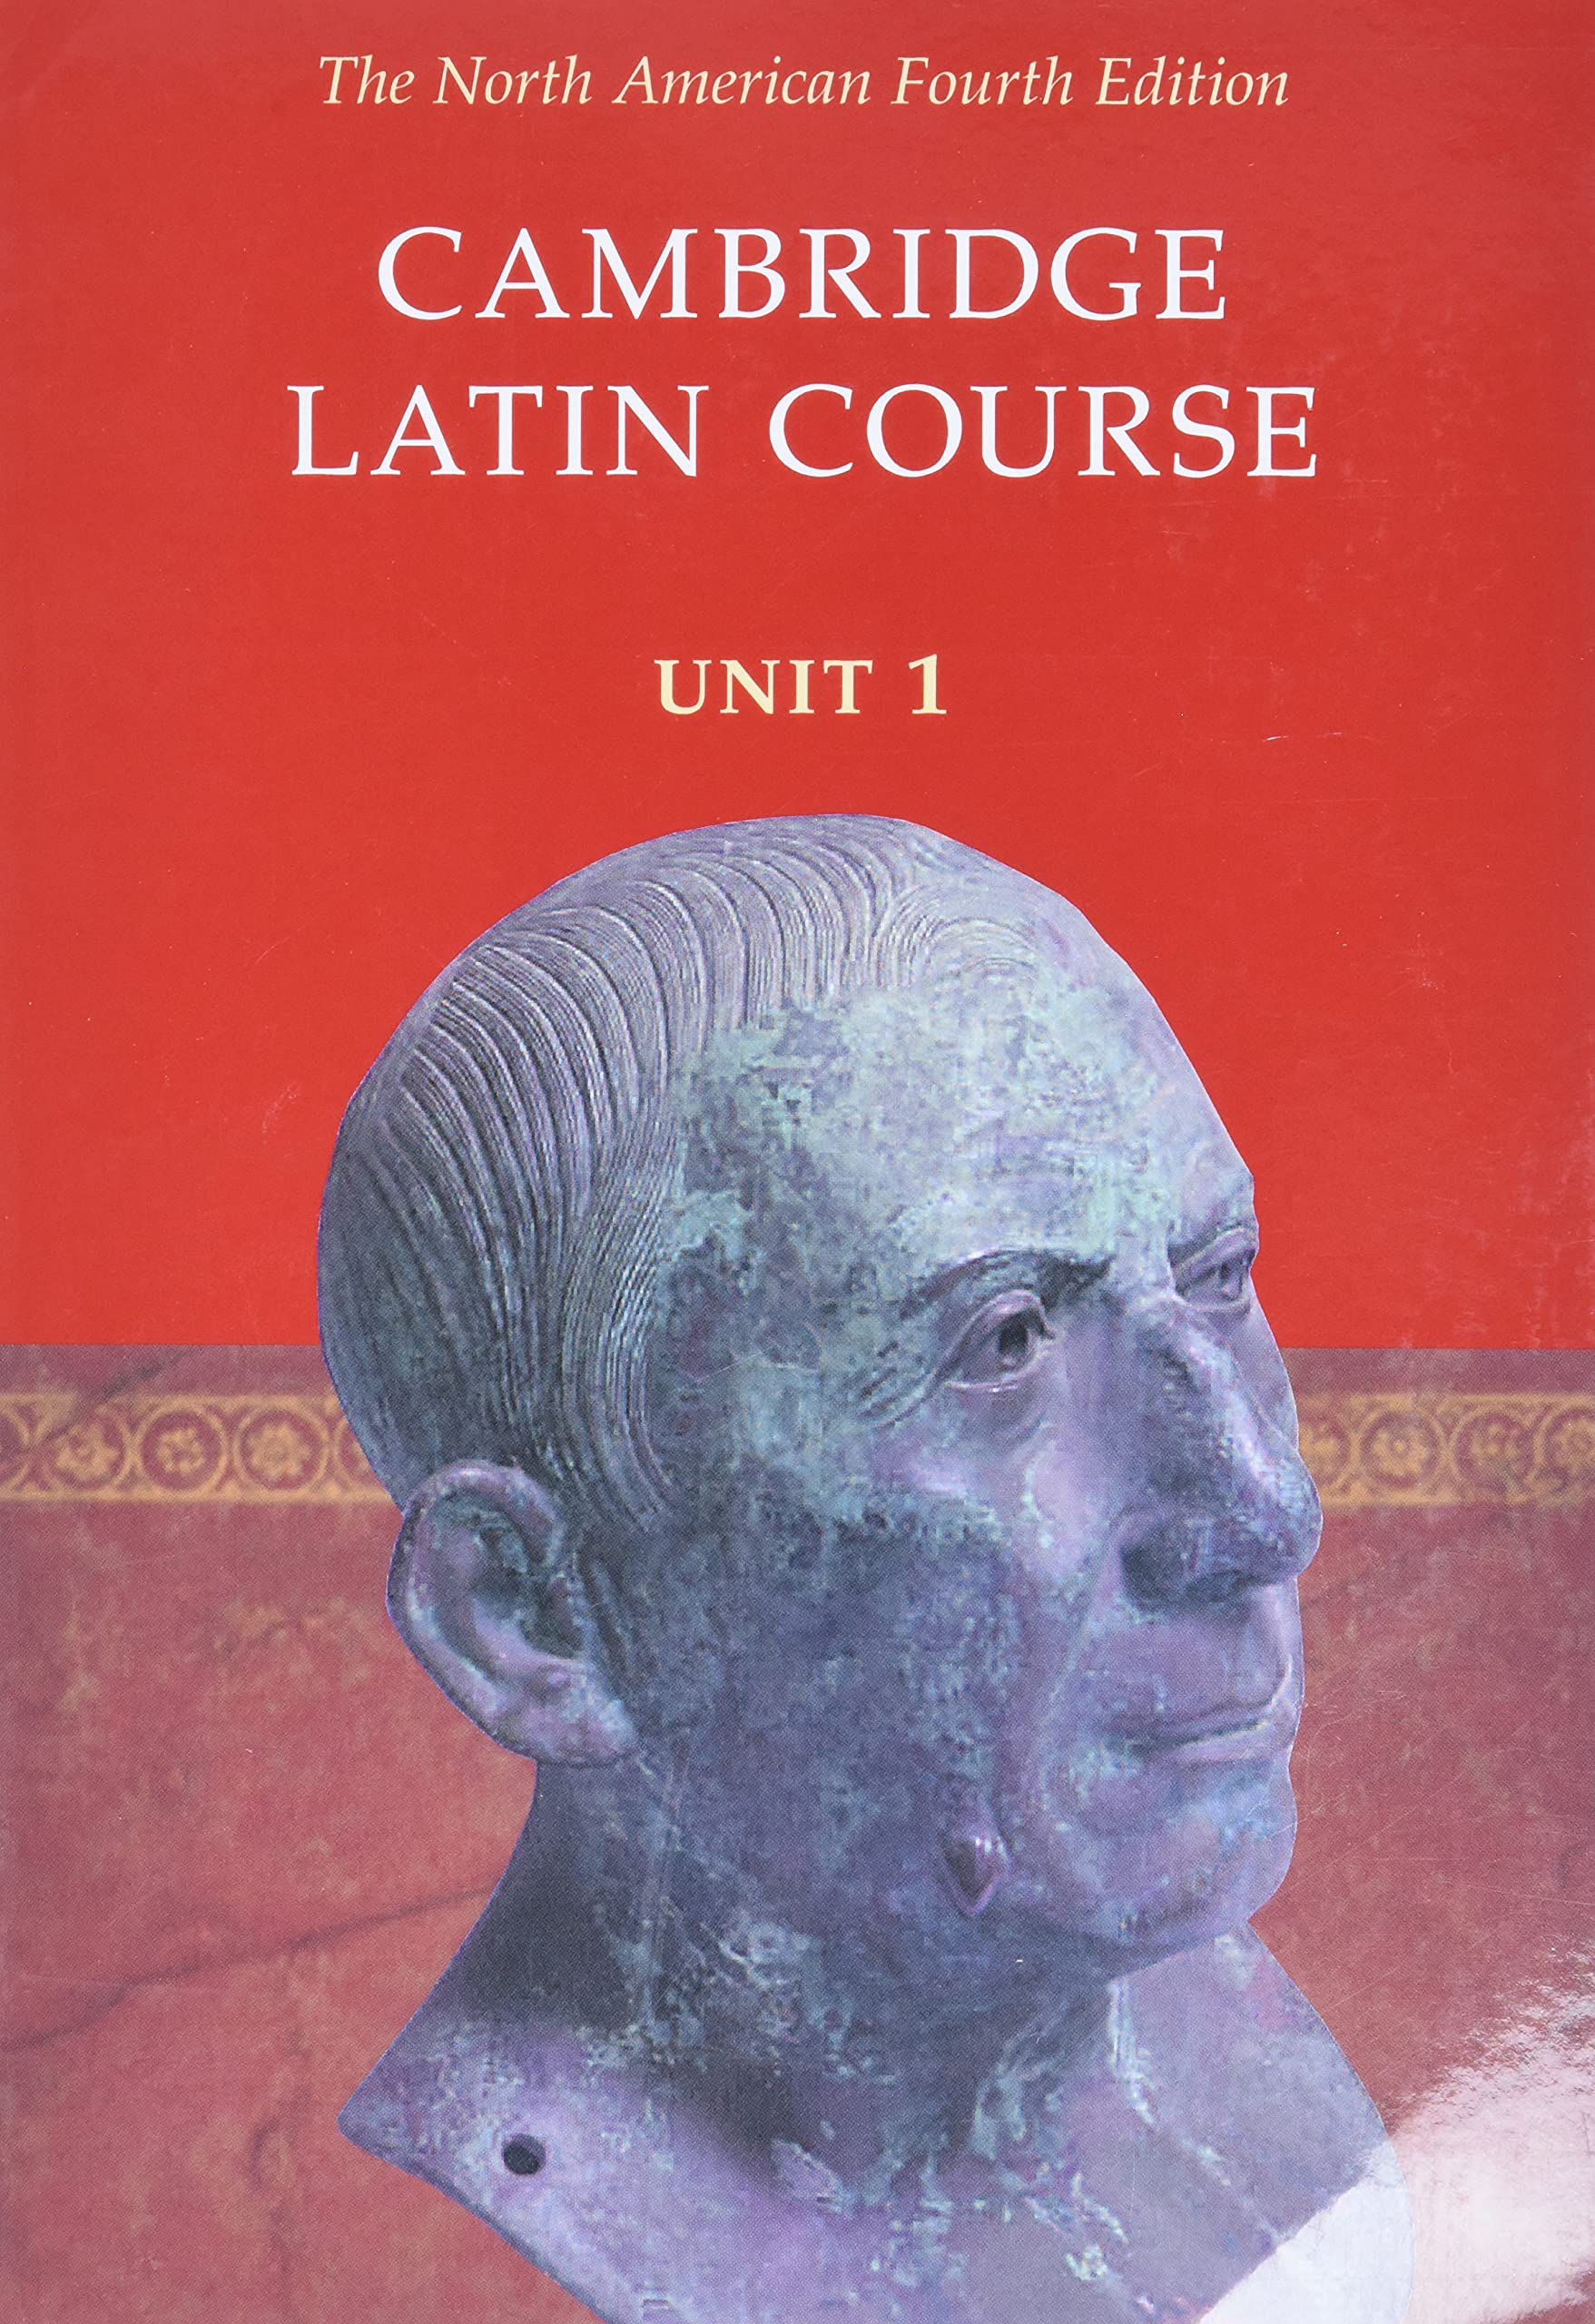 Cambridge Latin Course: Unit 1, North American 4th Edition